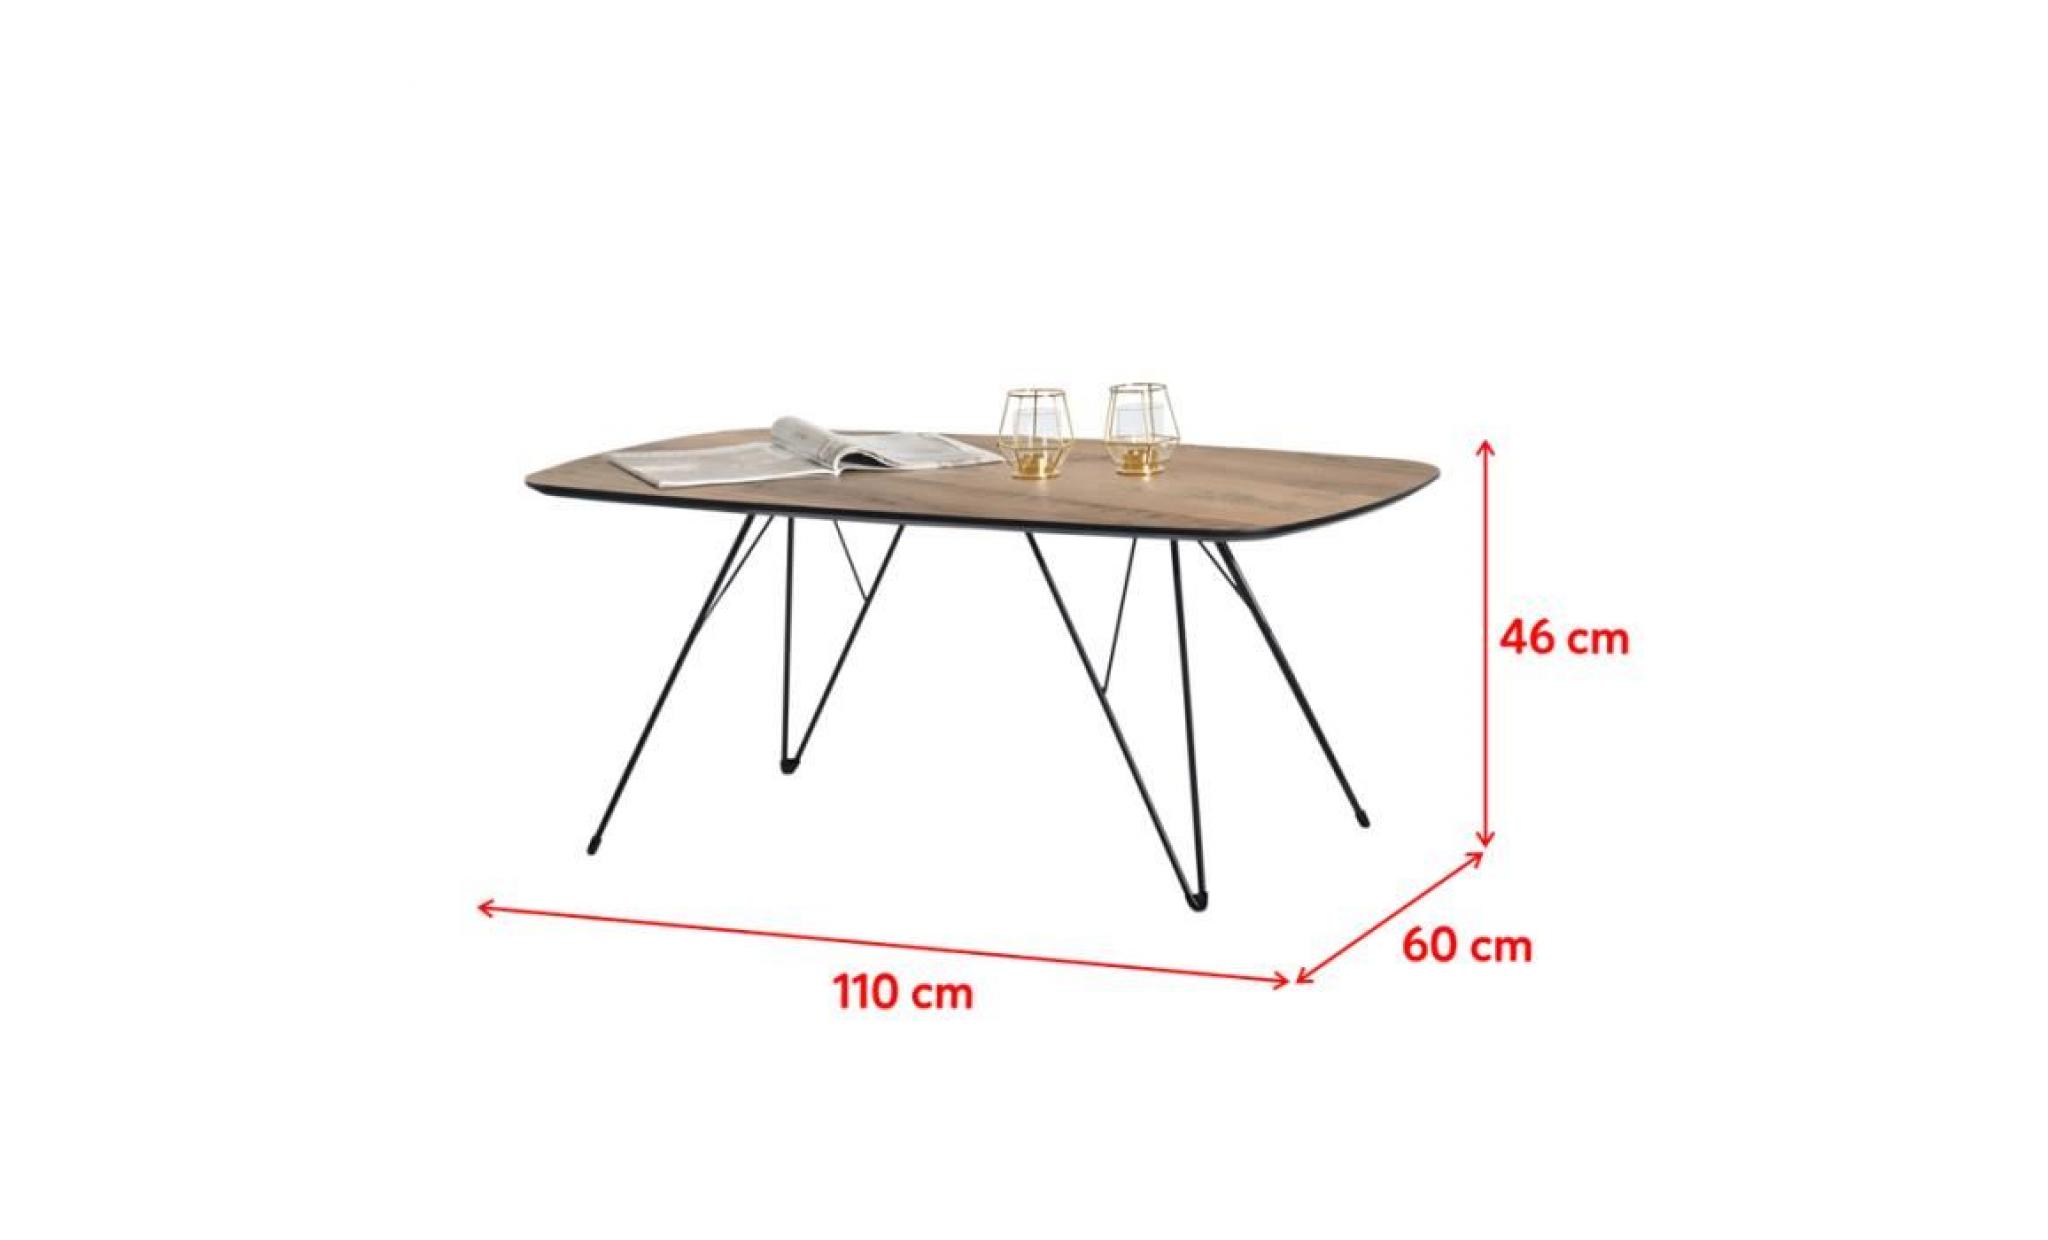 table basse design / table basse vintage   rubis   110x60 cm   effet noyer / noir   pieds métalliques   style vintage pas cher